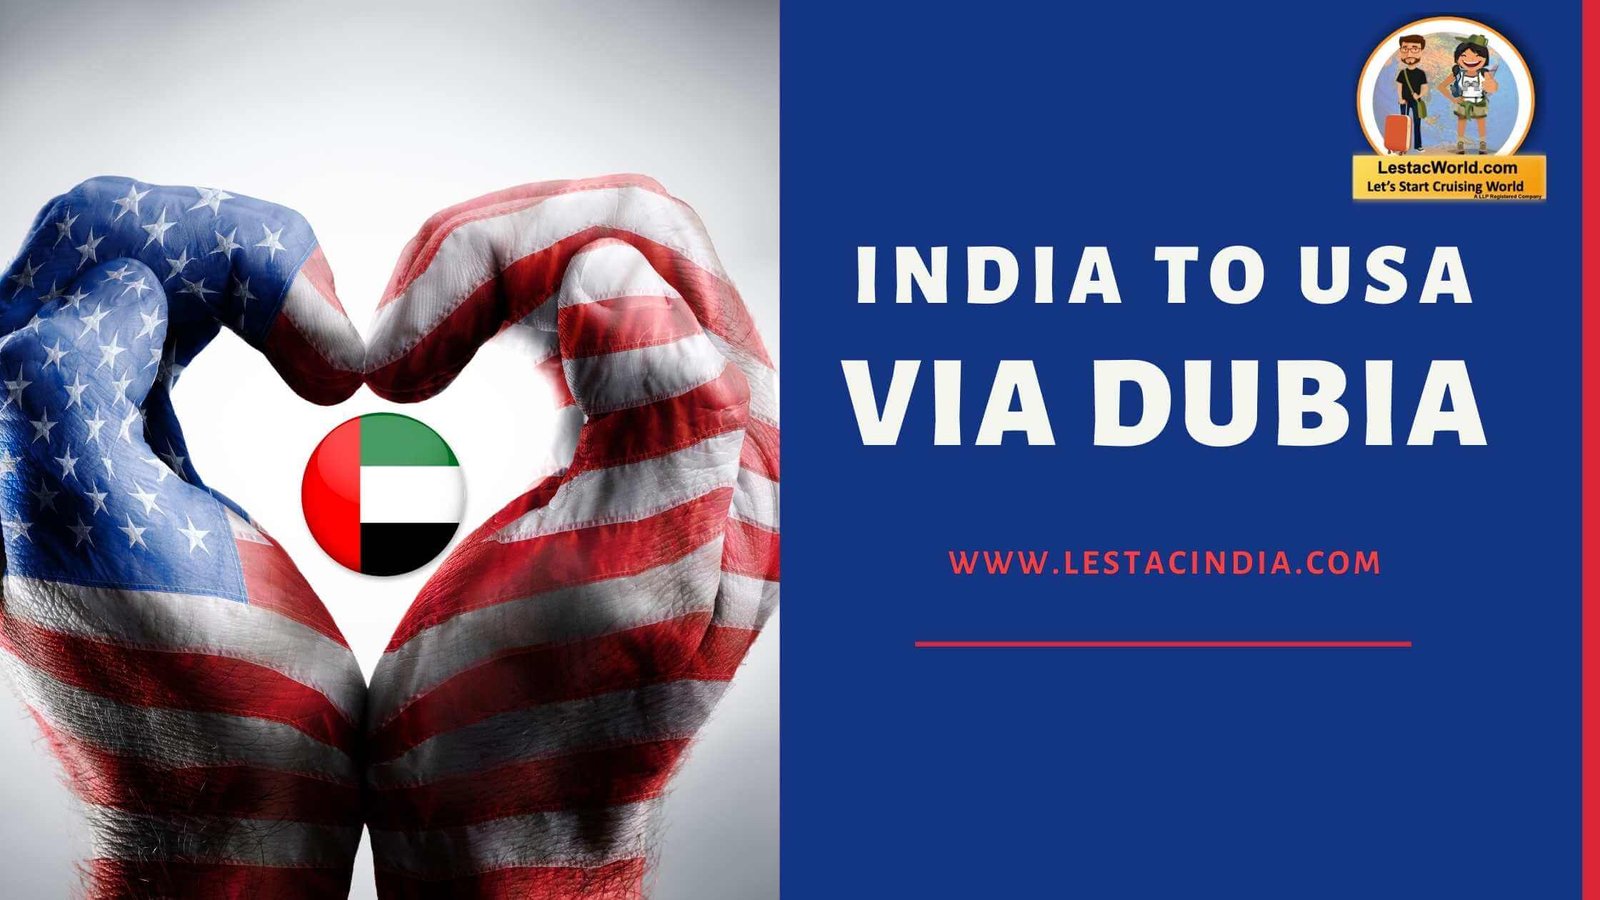 India to USA via Dubai